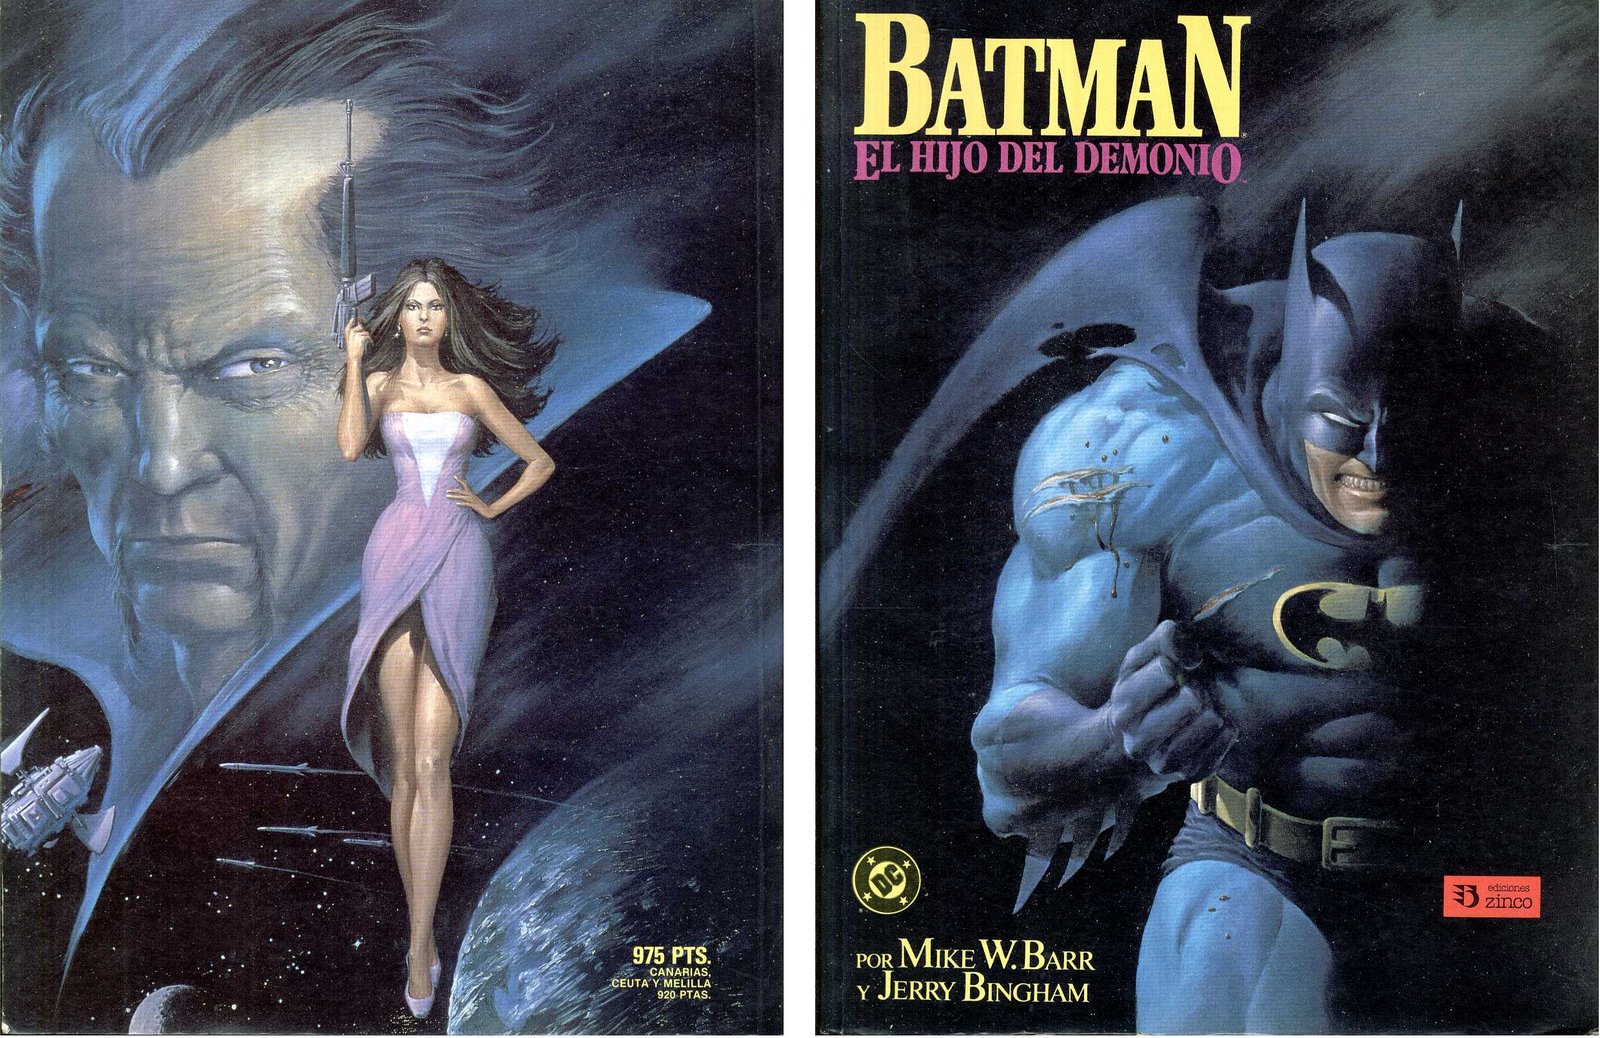 Los mejores comics de Batman - Libertad Digital - Cultura